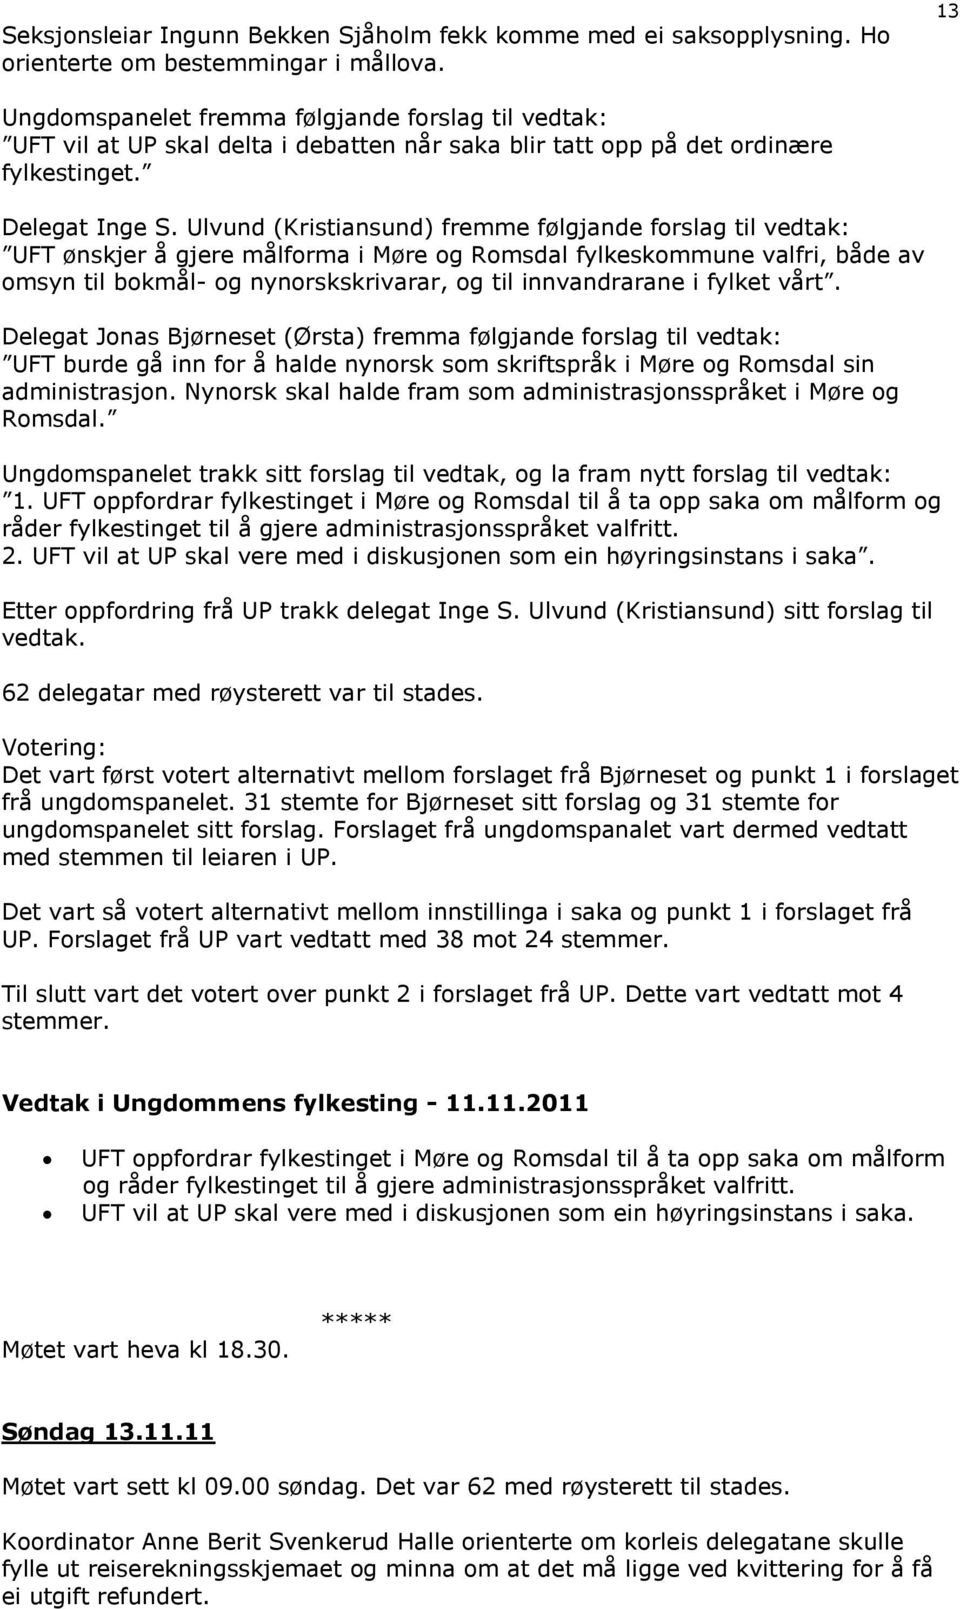 Ulvund (Kristiansund) fremme følgjande forslag til vedtak: UFT ønskjer å gjere målforma i Møre og Romsdal fylkeskommune valfri, både av omsyn til bokmål- og nynorskskrivarar, og til innvandrarane i